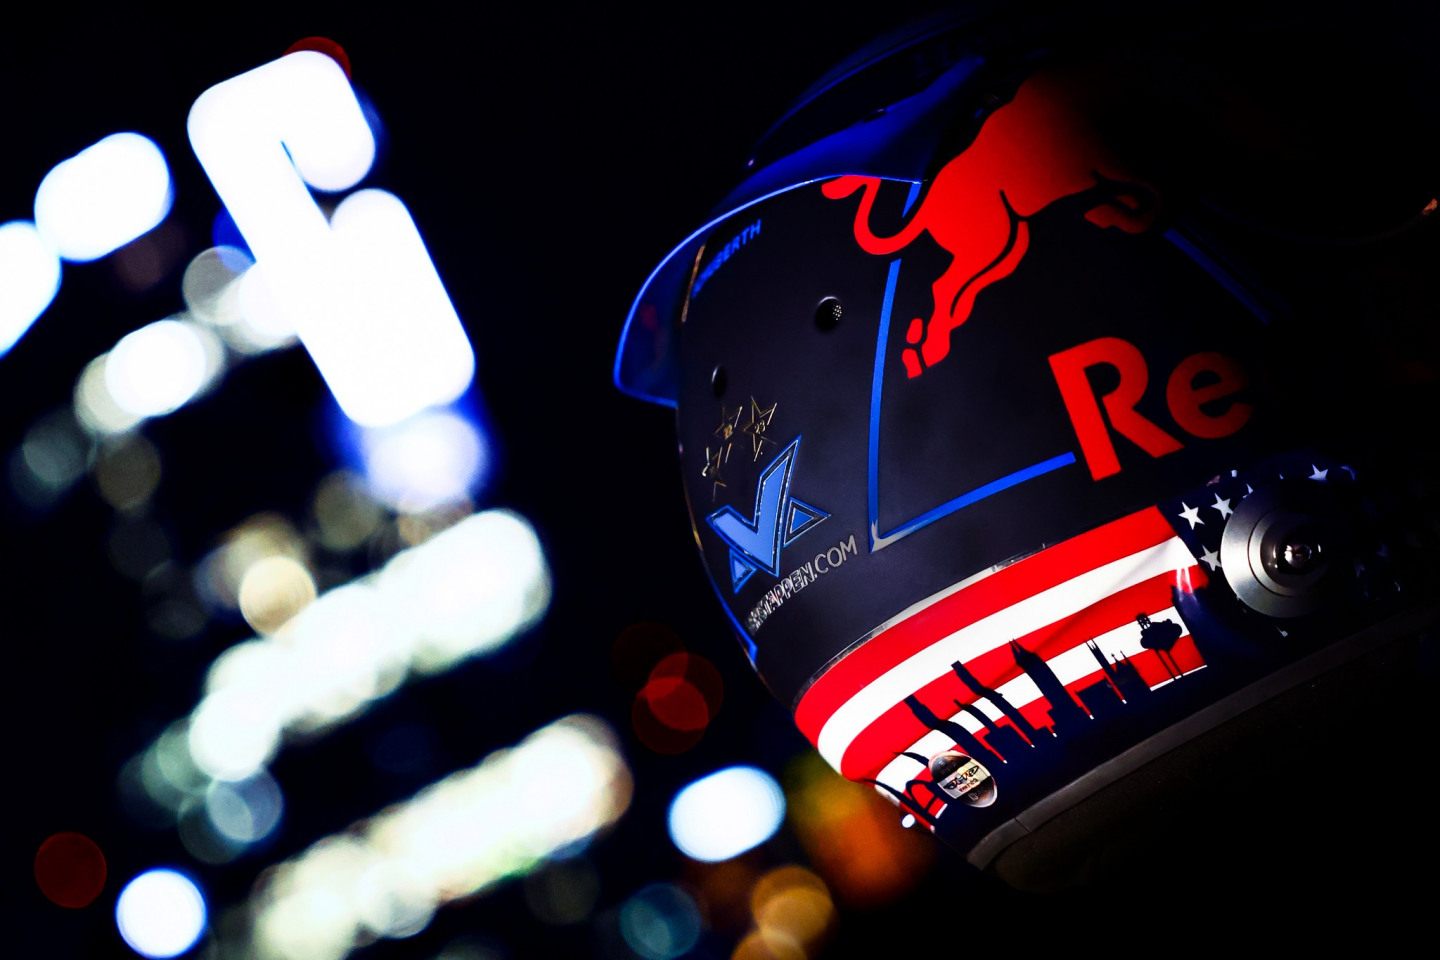 Шлем Макса Ферстаппена для этапов Формулы 1 в США © Соцсети